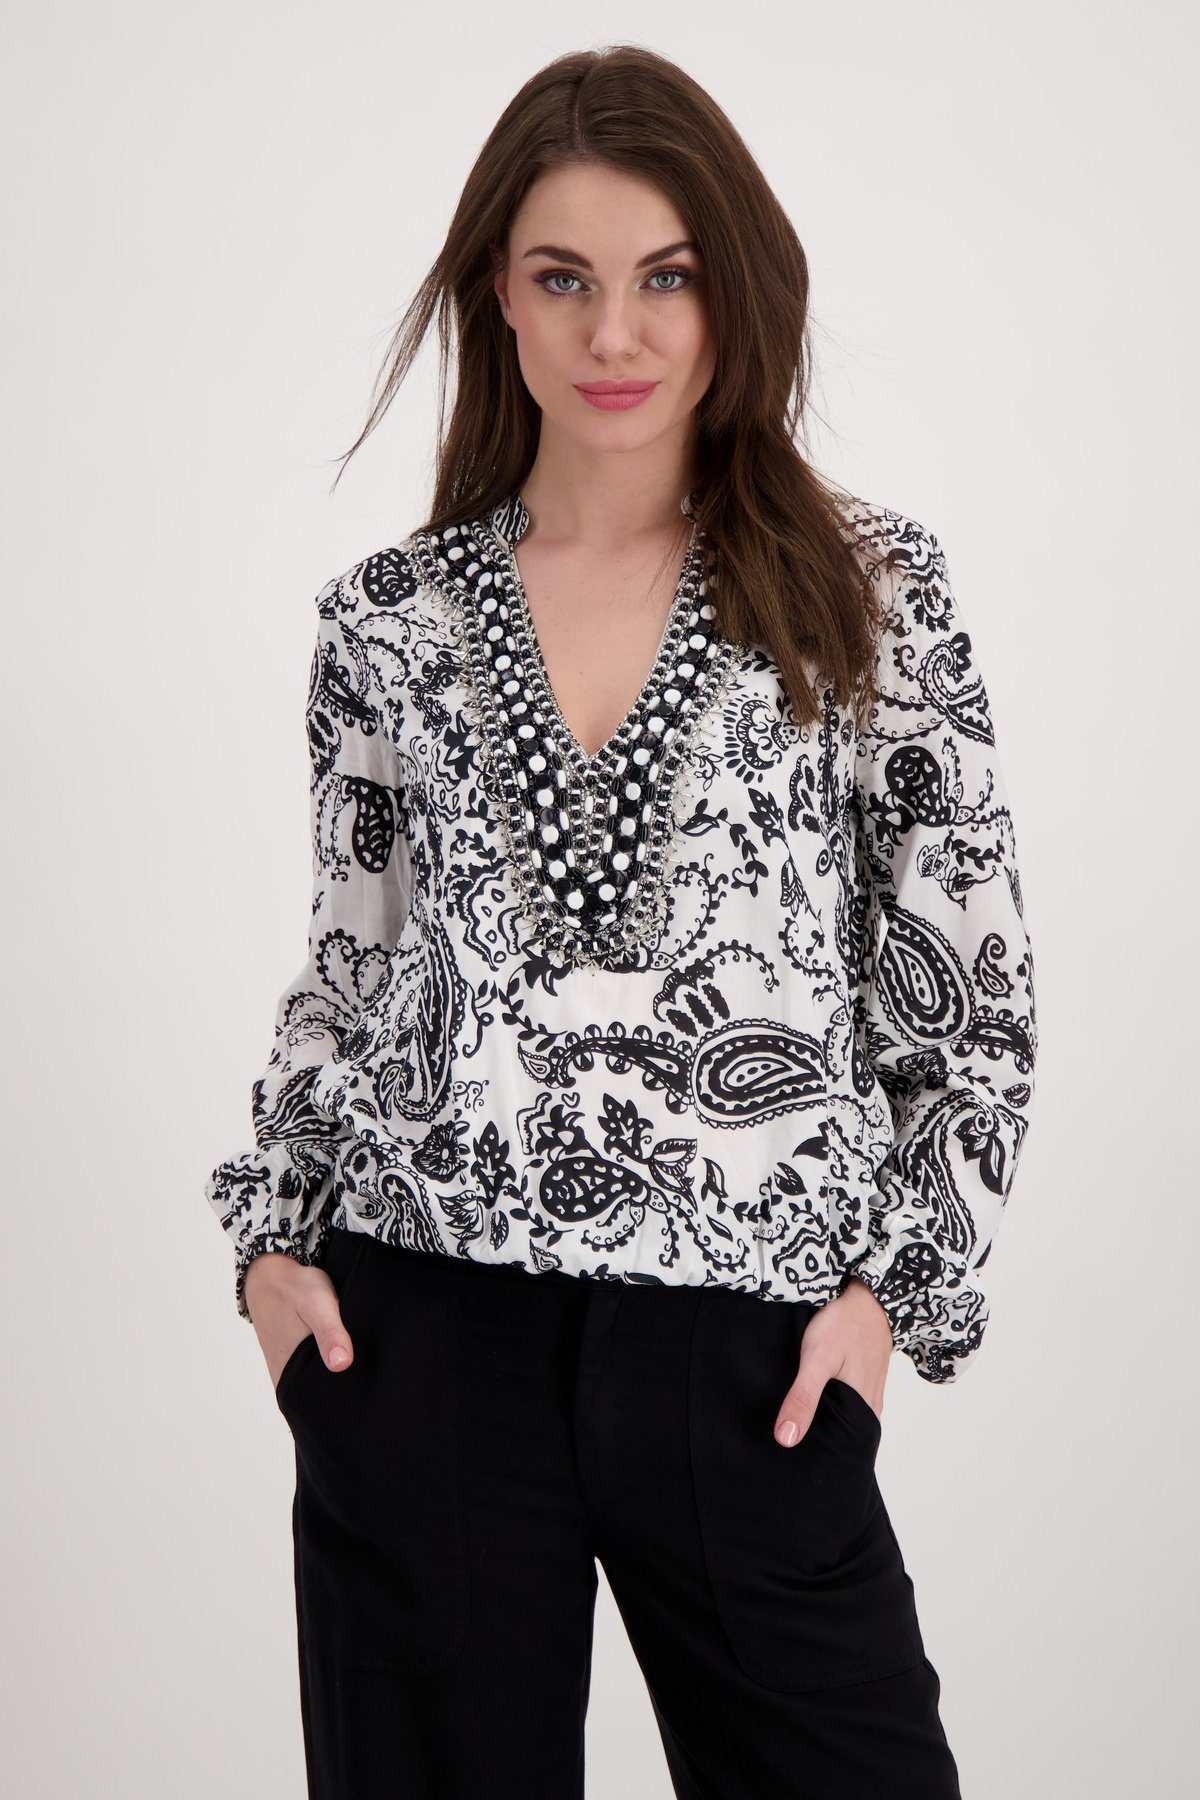 Monari Klassische Bluse Bluse mit Paisley Muster schwarz